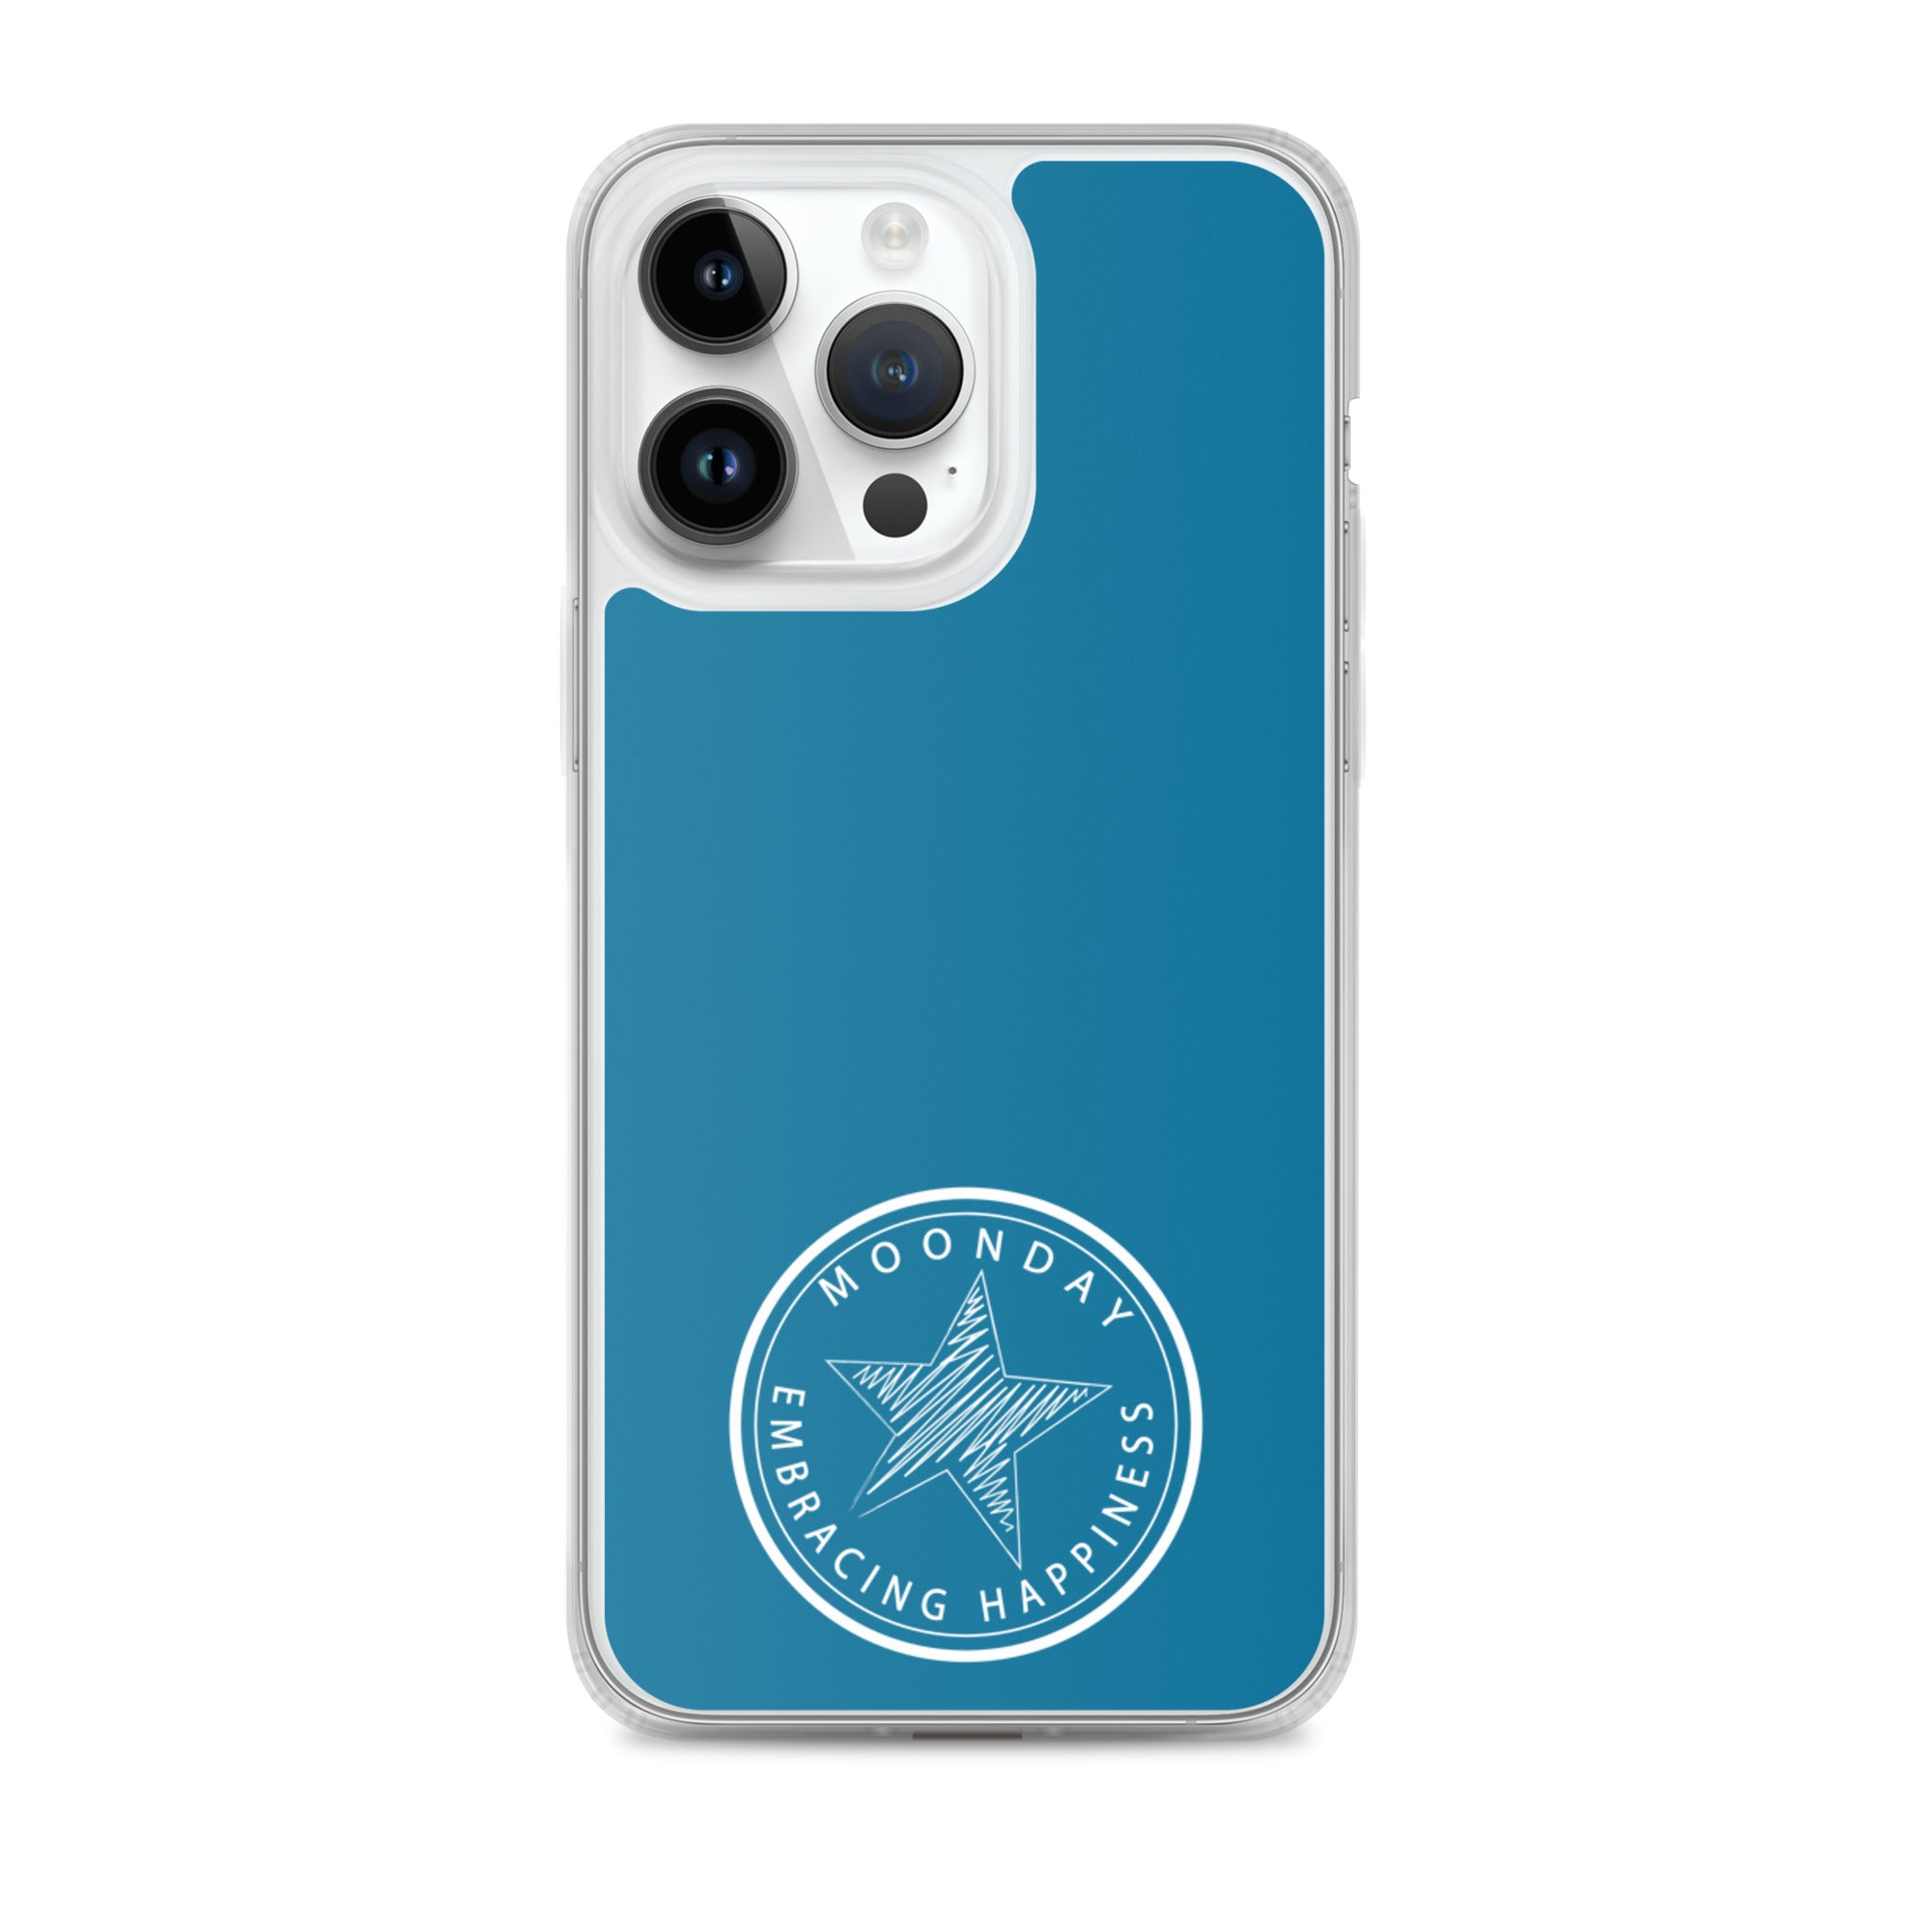 Classic blue iPhone Case